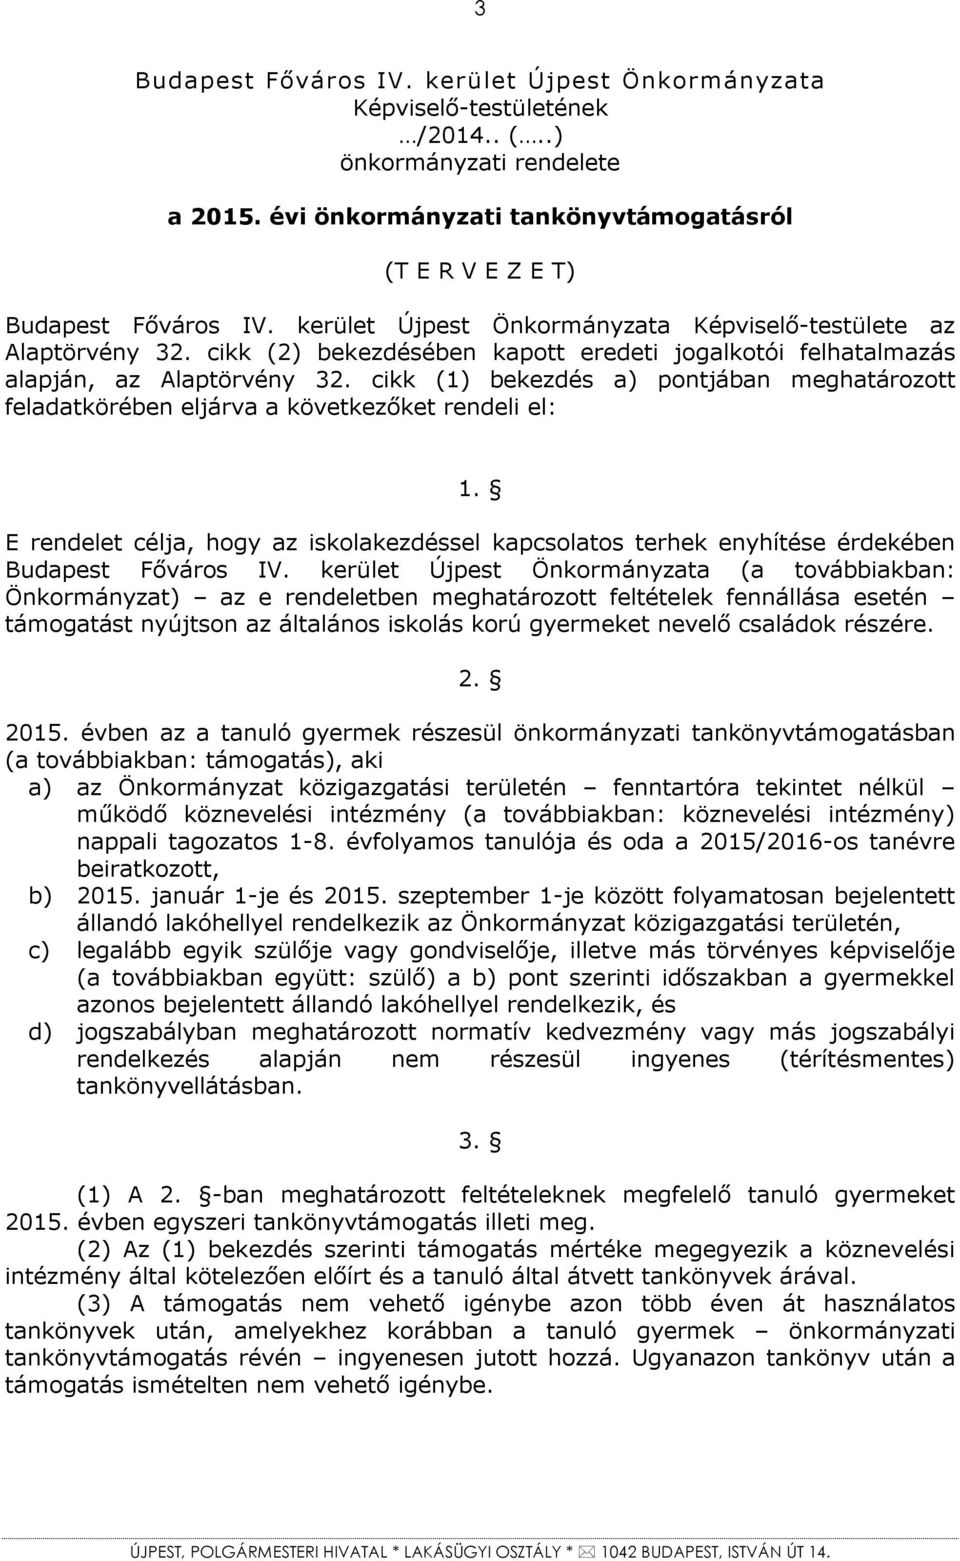 cikk (1) bekezdés a) pontjában meghatározott feladatkörében eljárva a következőket rendeli el: 1. E rendelet célja, hogy az iskolakezdéssel kapcsolatos terhek enyhítése érdekében Budapest Főváros IV.